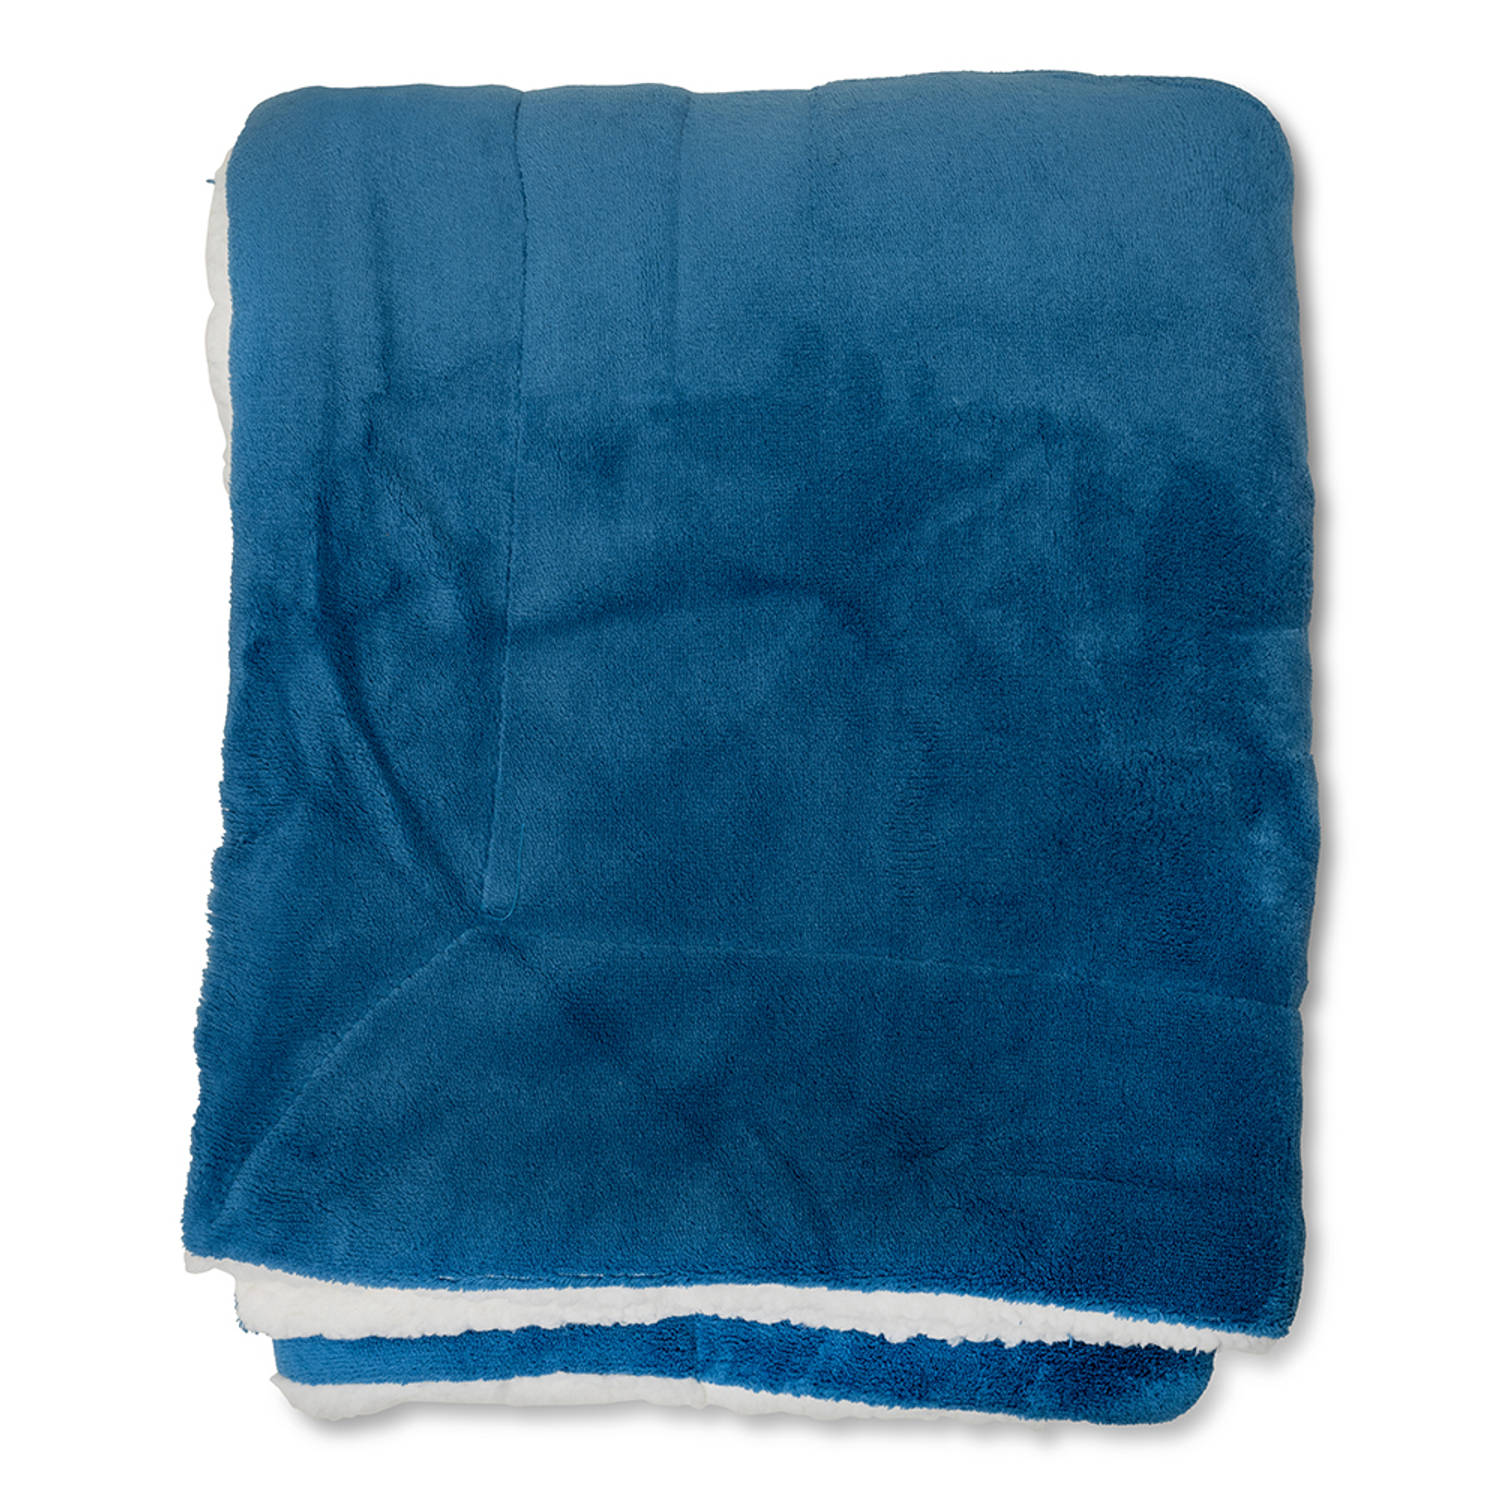 Wicotex-Plaid-deken-fleece plaid Espoo blauw 150x200cm met witte sherpa binnenkant-Zacht en warme Fl